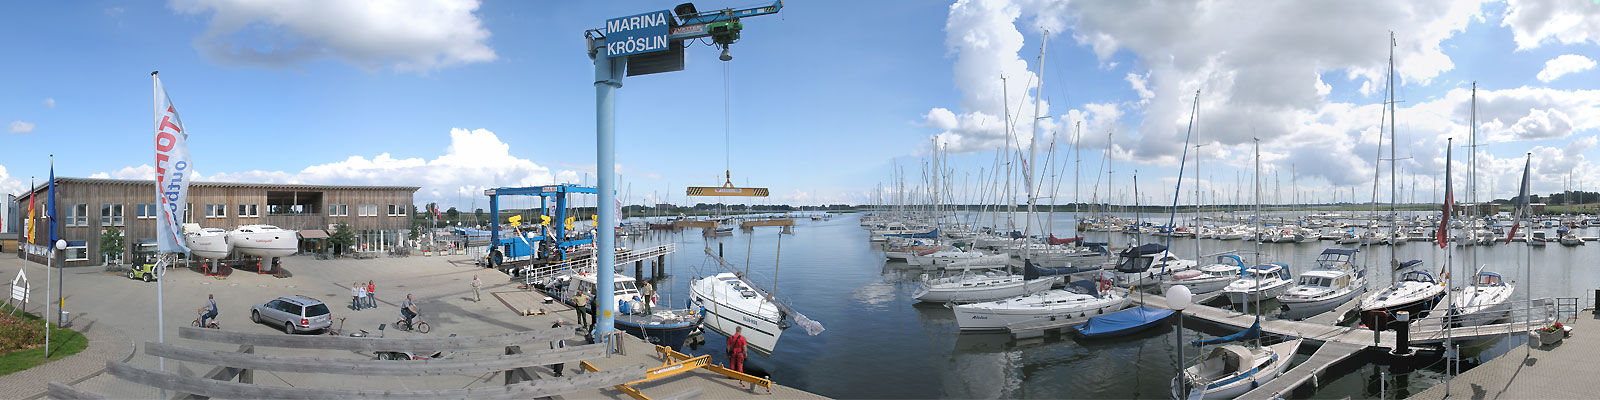 Panorama: Kröslin Marina - Motivnummer: gre-kro-01